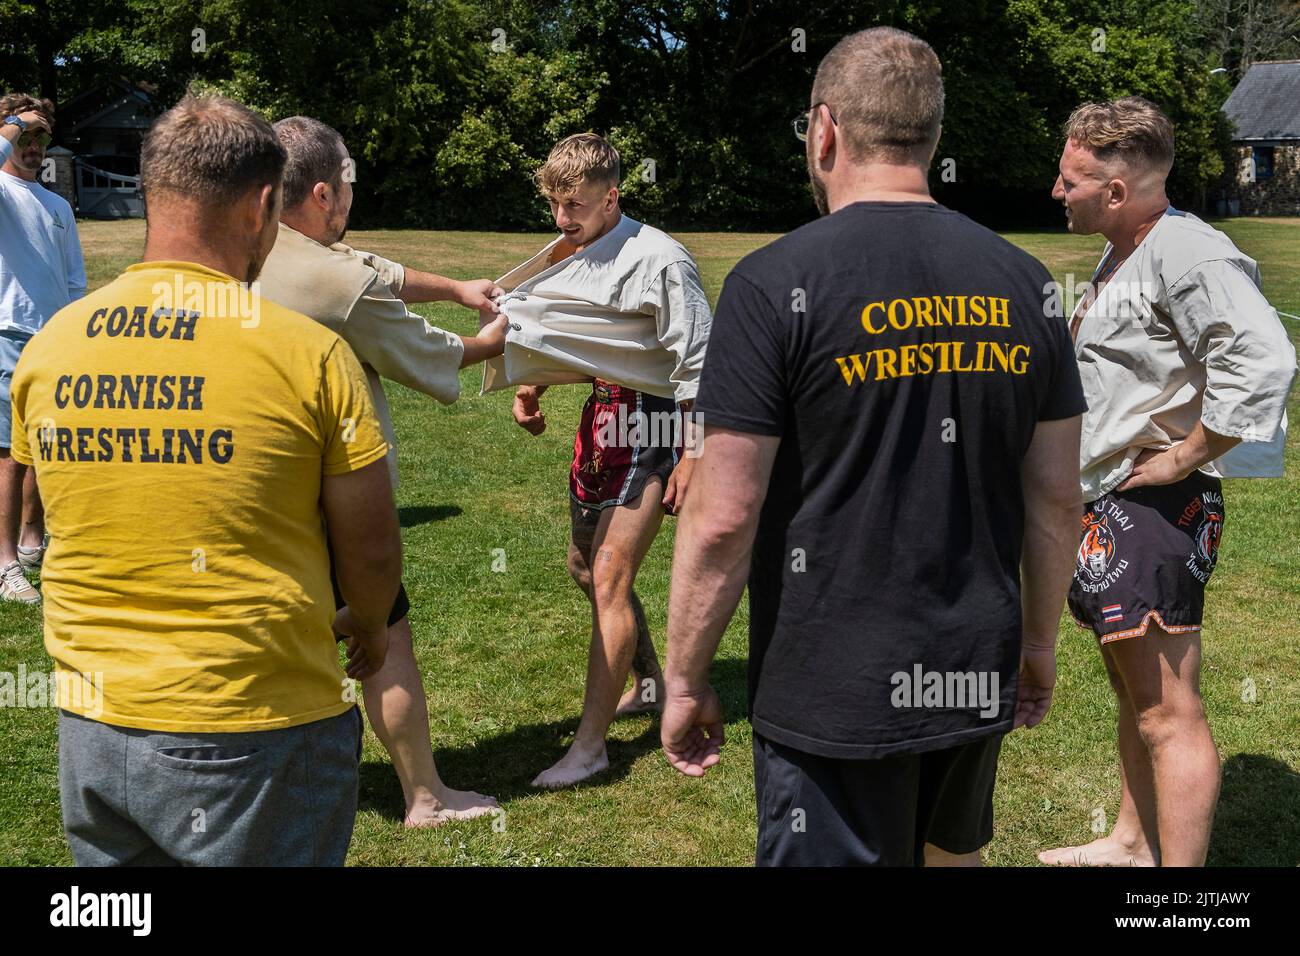 Trainer unterrichten die Regeln und Techniken des Cornish Wrestling vor dem Start des Grand Cornish Wrestling Tournament im malerischen Dorf g Stockfoto